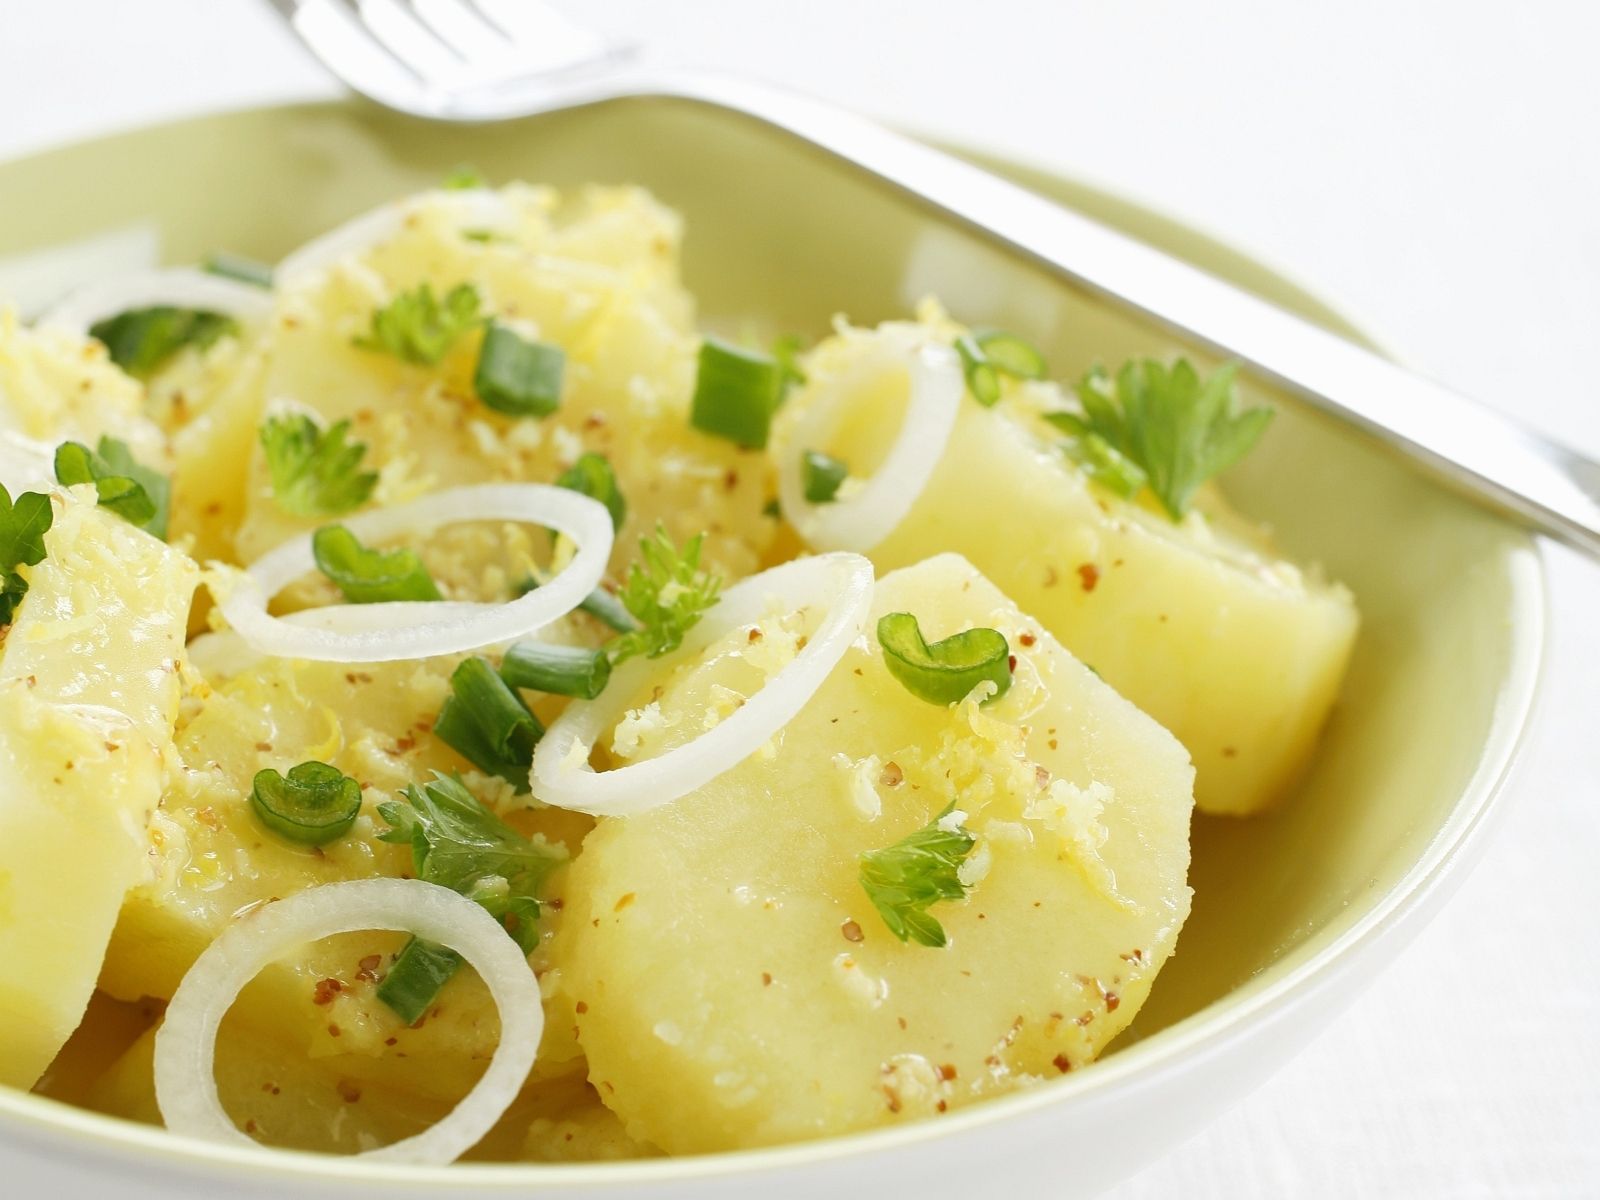  Kartoffelsalat Hintergrundbild 1600x1200. Frischer Kartoffelsalat mit Zwiebeln und Zitrone Rezept